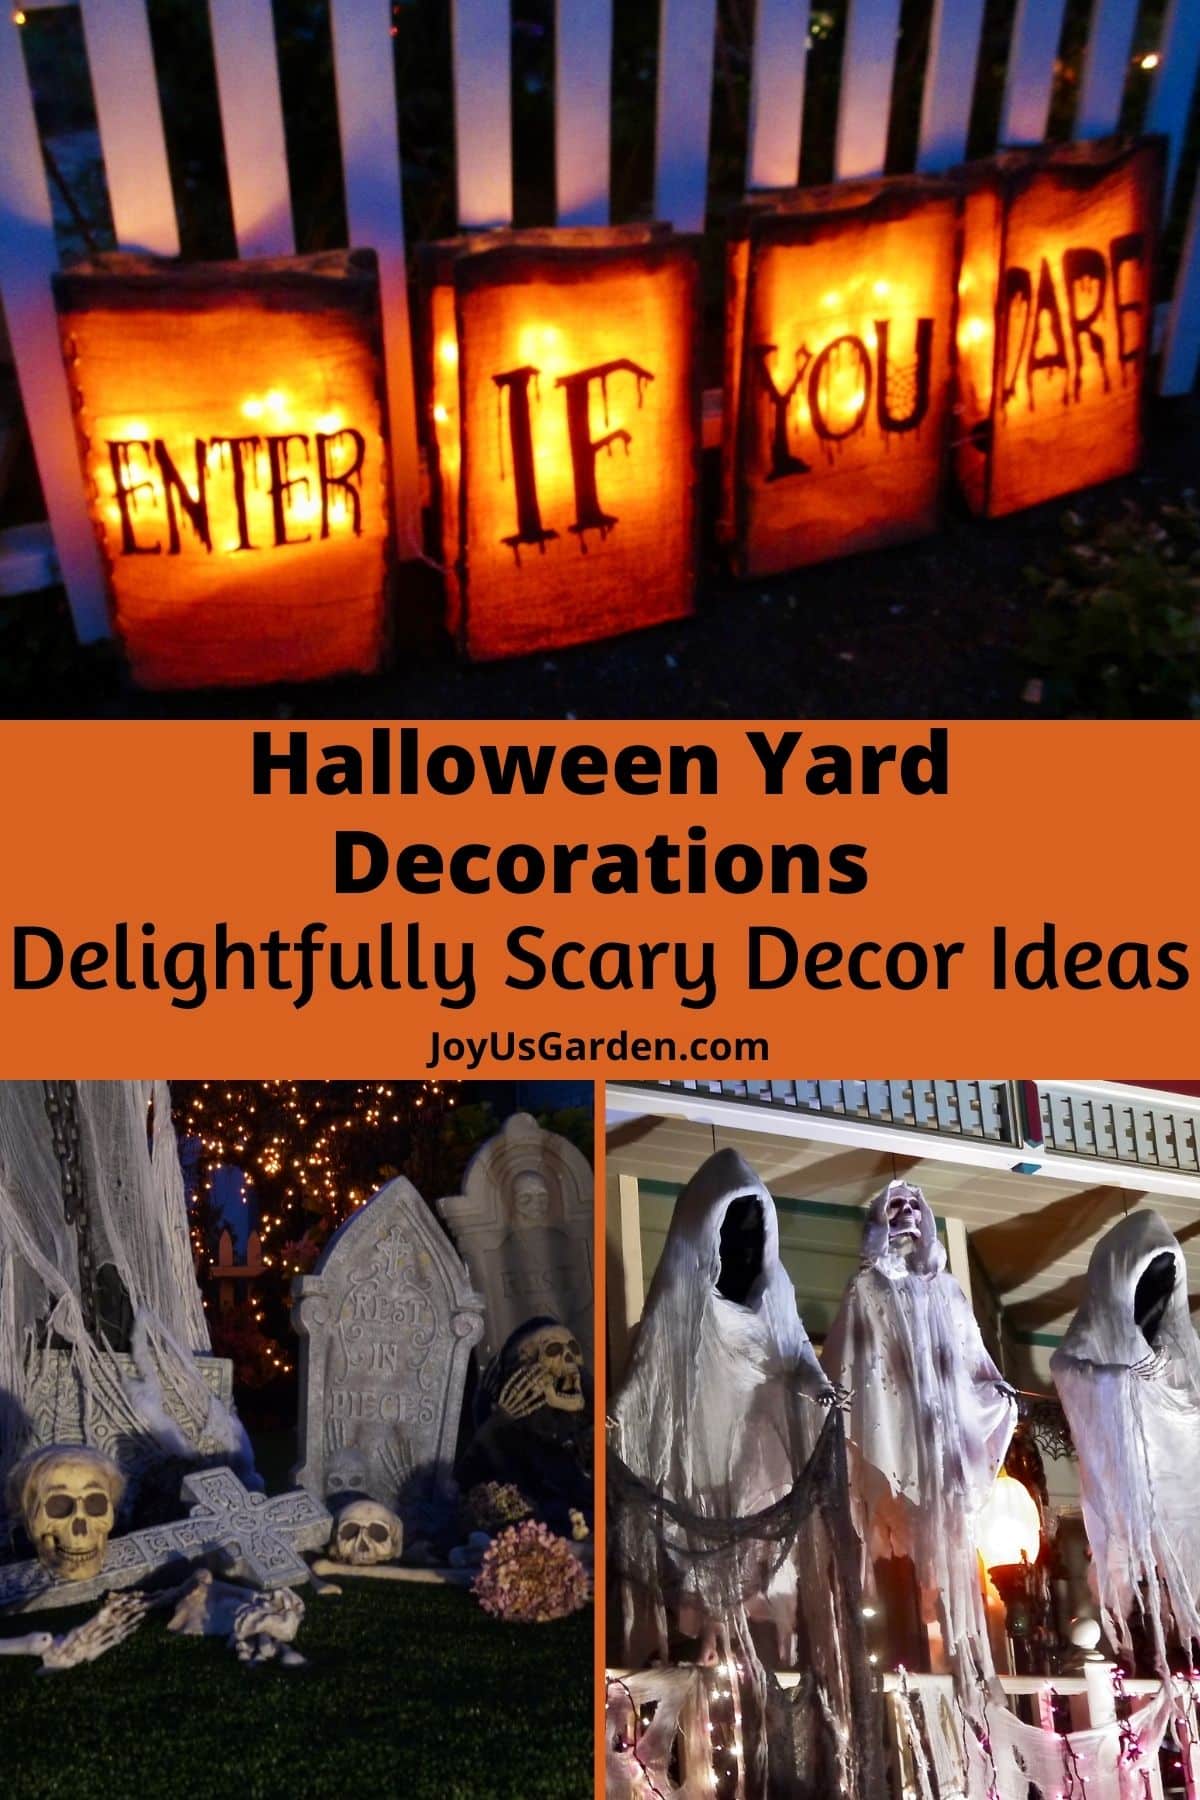  Halloween-werfversierings: heerlike eng dekor-idees